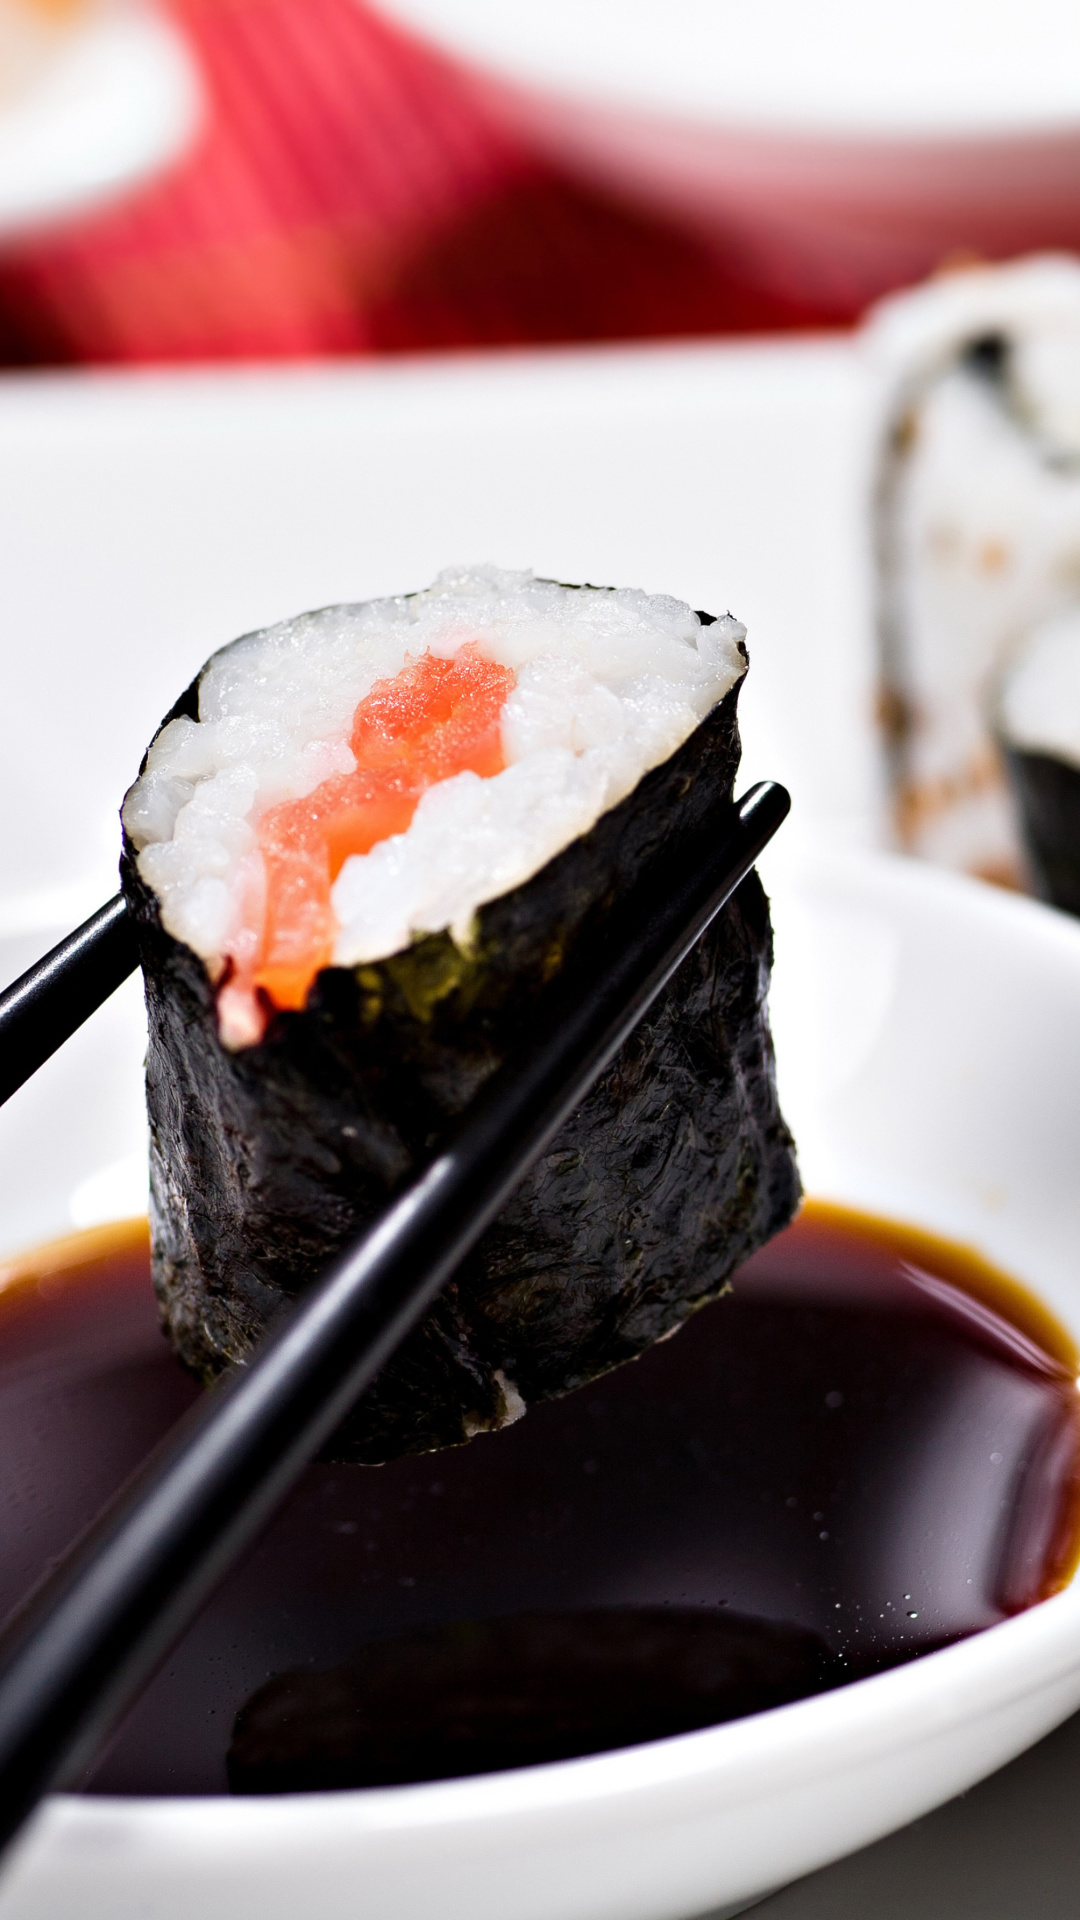 Обои Sushi and Chopsticks 1080x1920